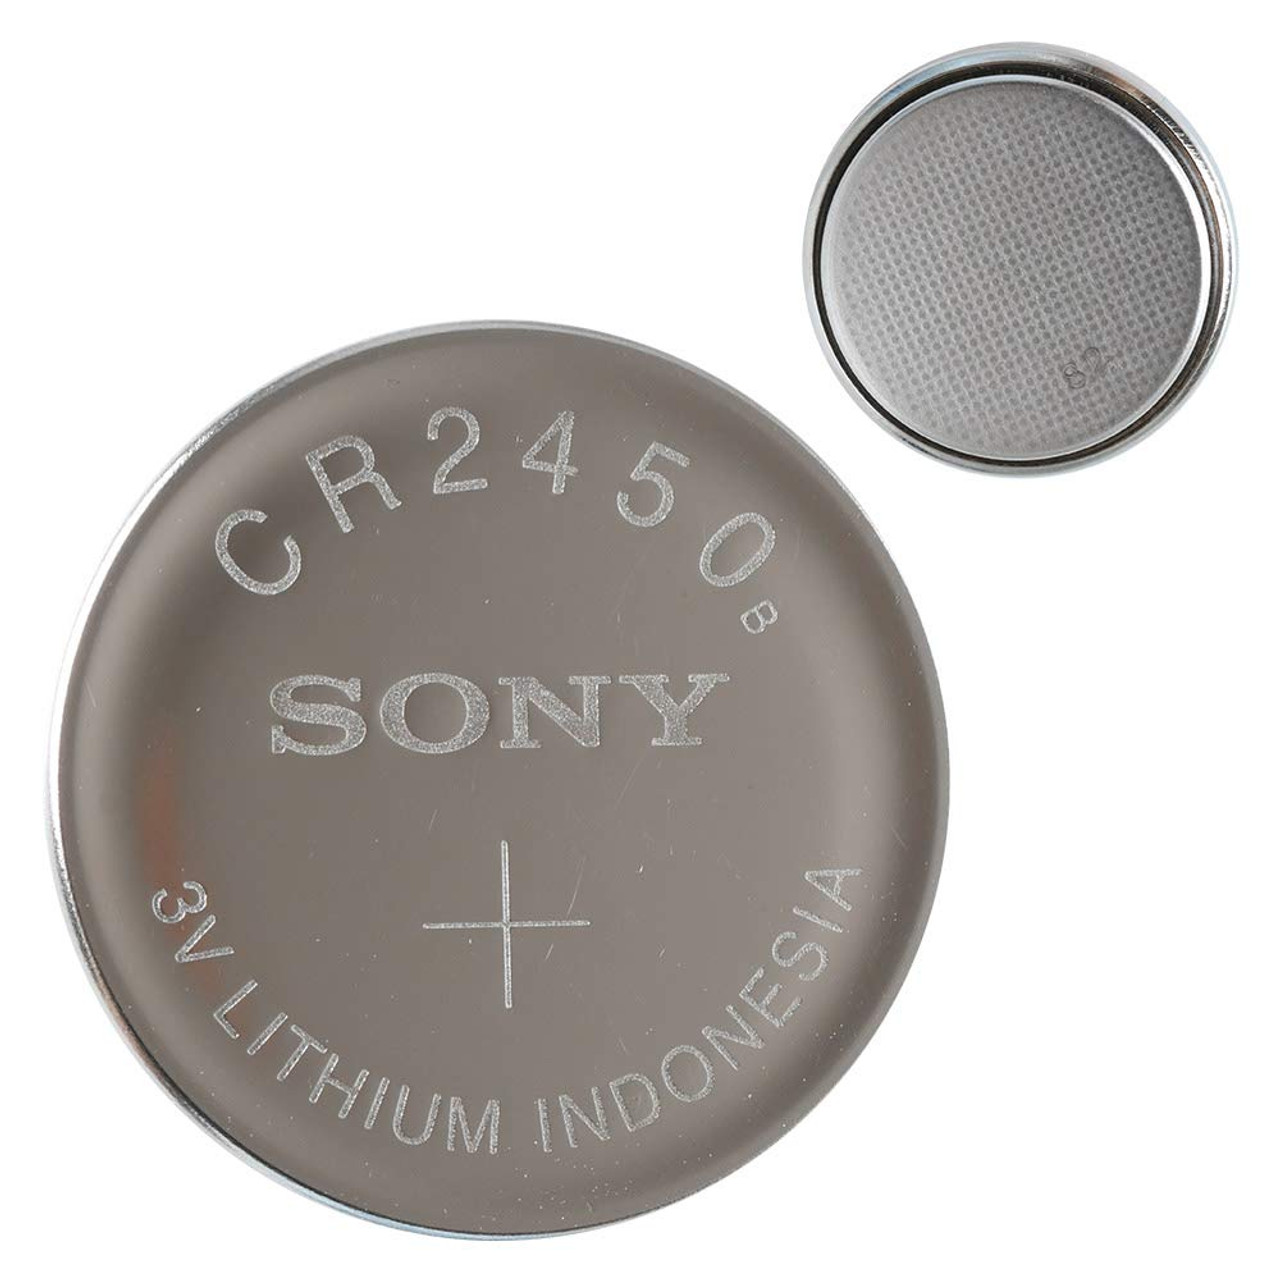 Sony CR2450 3V Lithium Battery CR2450 X 4 Batteries